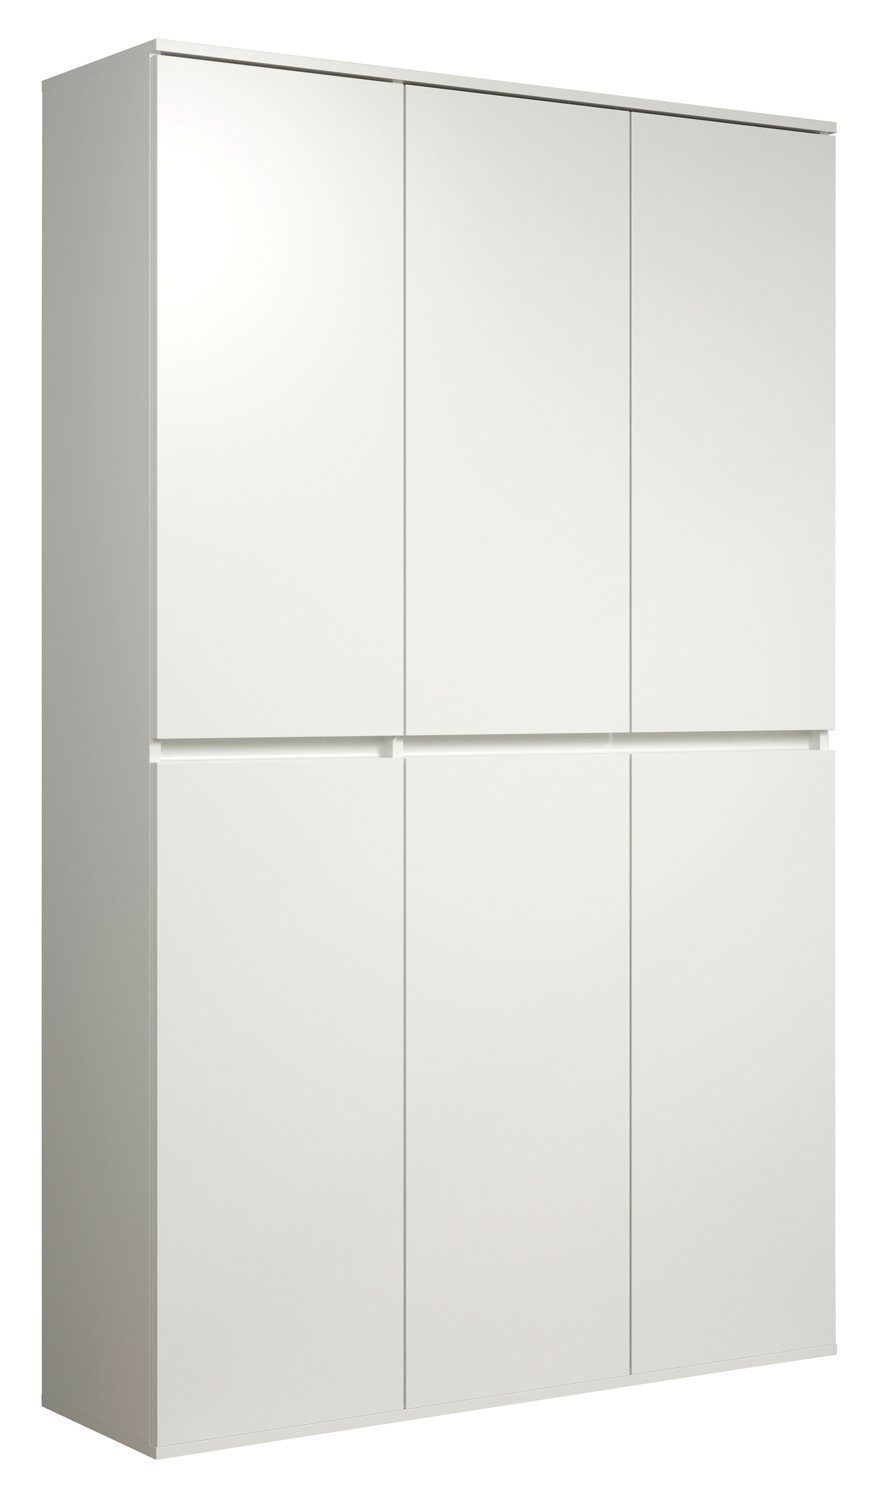 NEVADA, B 6 191 cm Mehrzweckschrank H 111 Weiß, cm, Türen x